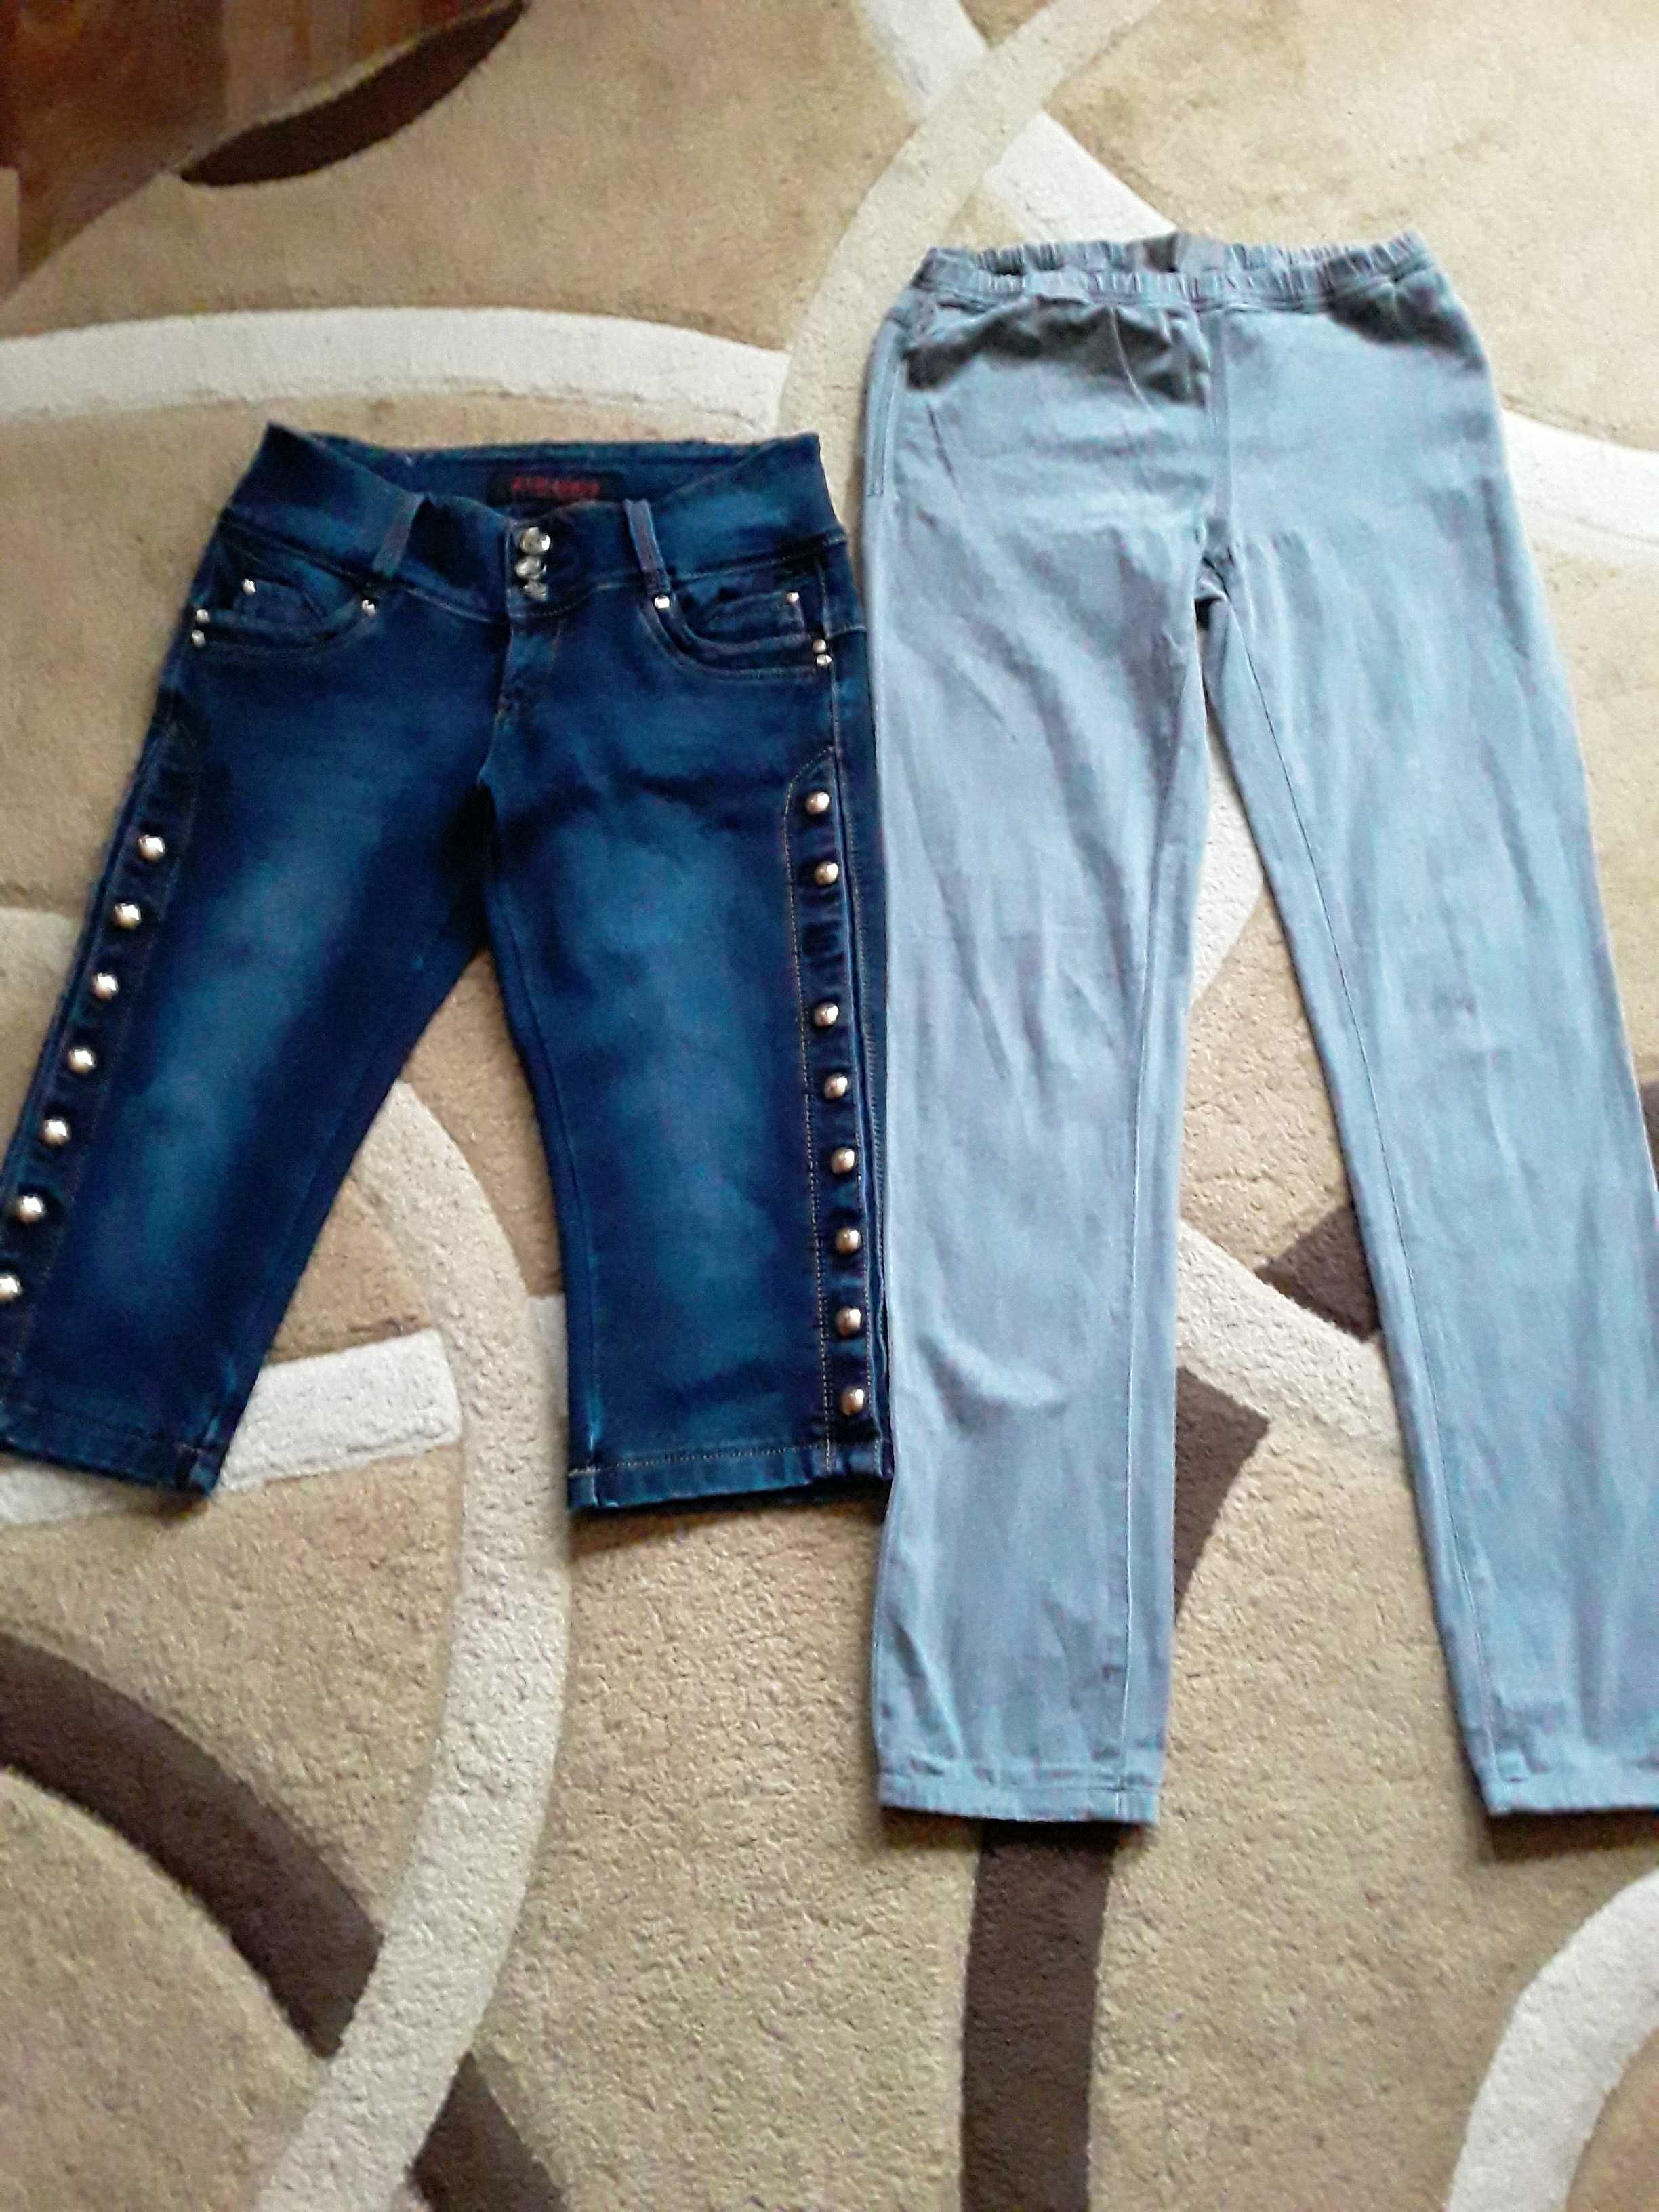 Продам 3 джинсов дев/жен: 1 синие, 1 серые, голубые, бриджи  44-46 раз